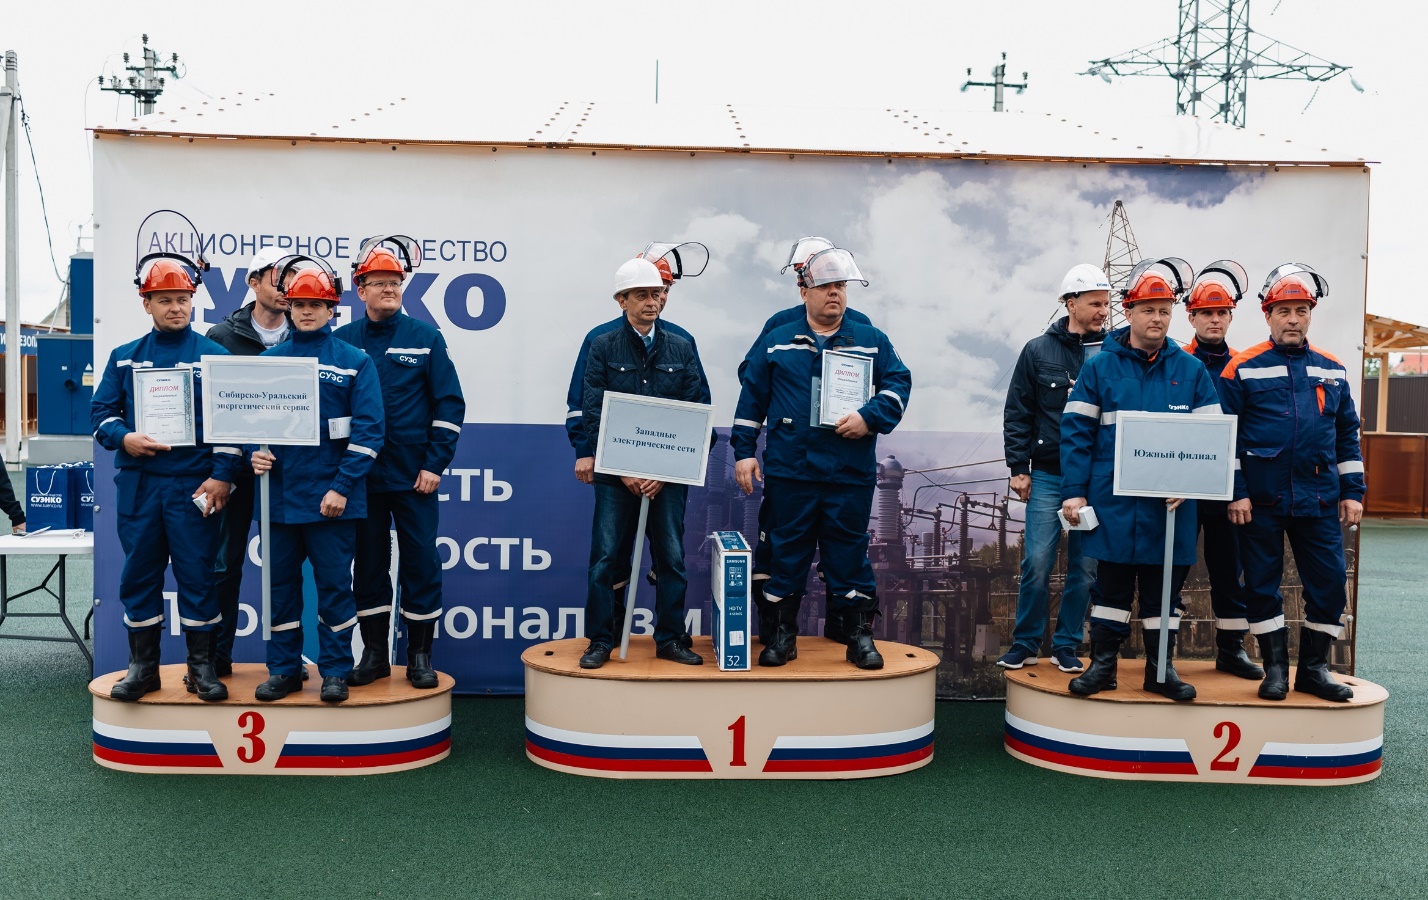 Сибирско-Уральская энергетическая компания (СУЭНКО) — межрегиональная многопрофильная энергетическая компания юга Тюменской и Курганской областей